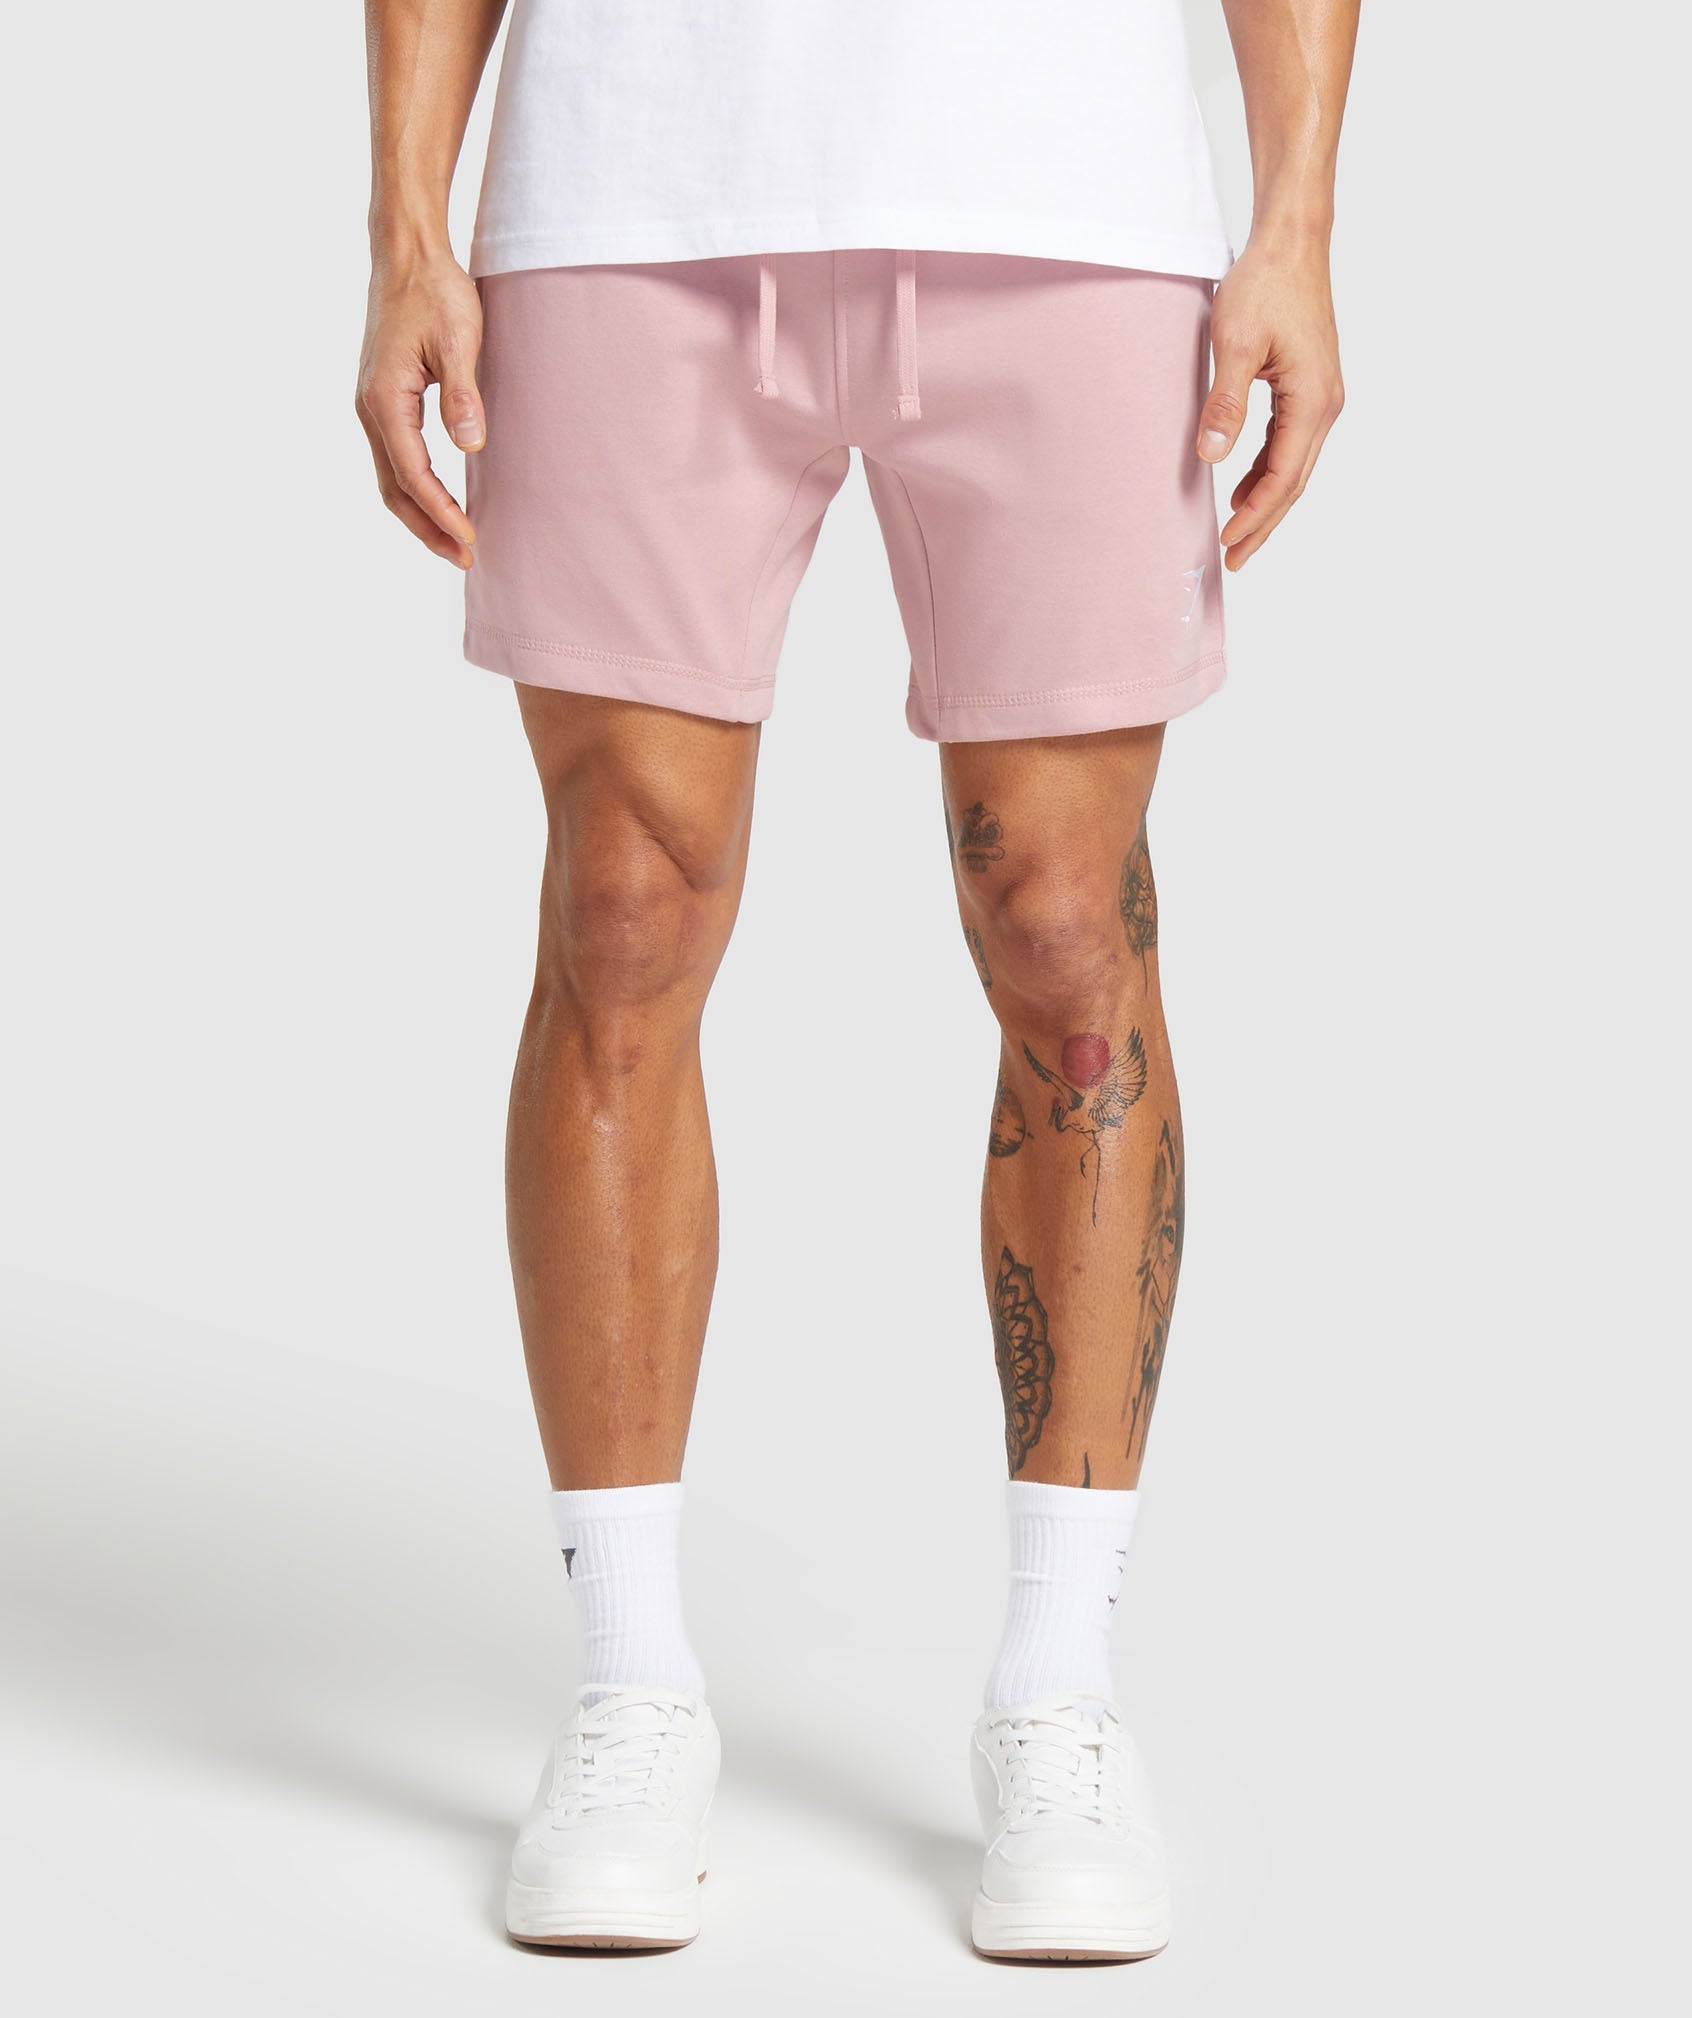 Gymshark Crest 7 Shorts - Light Pink